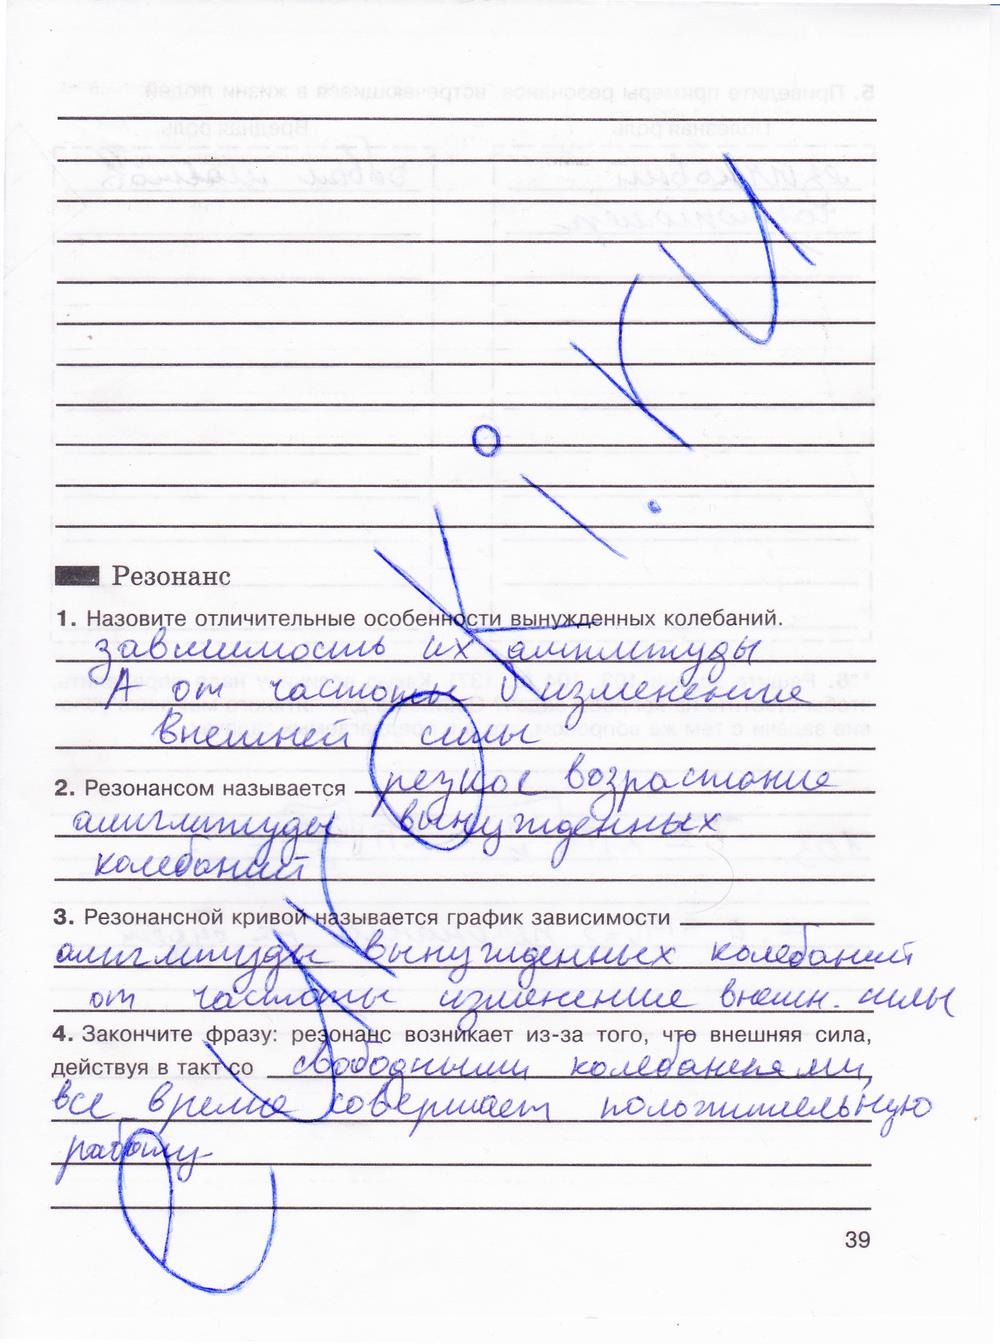 гдз 8 класс рабочая тетрадь страница 39 физика Мартынова, Иванова, Воронина